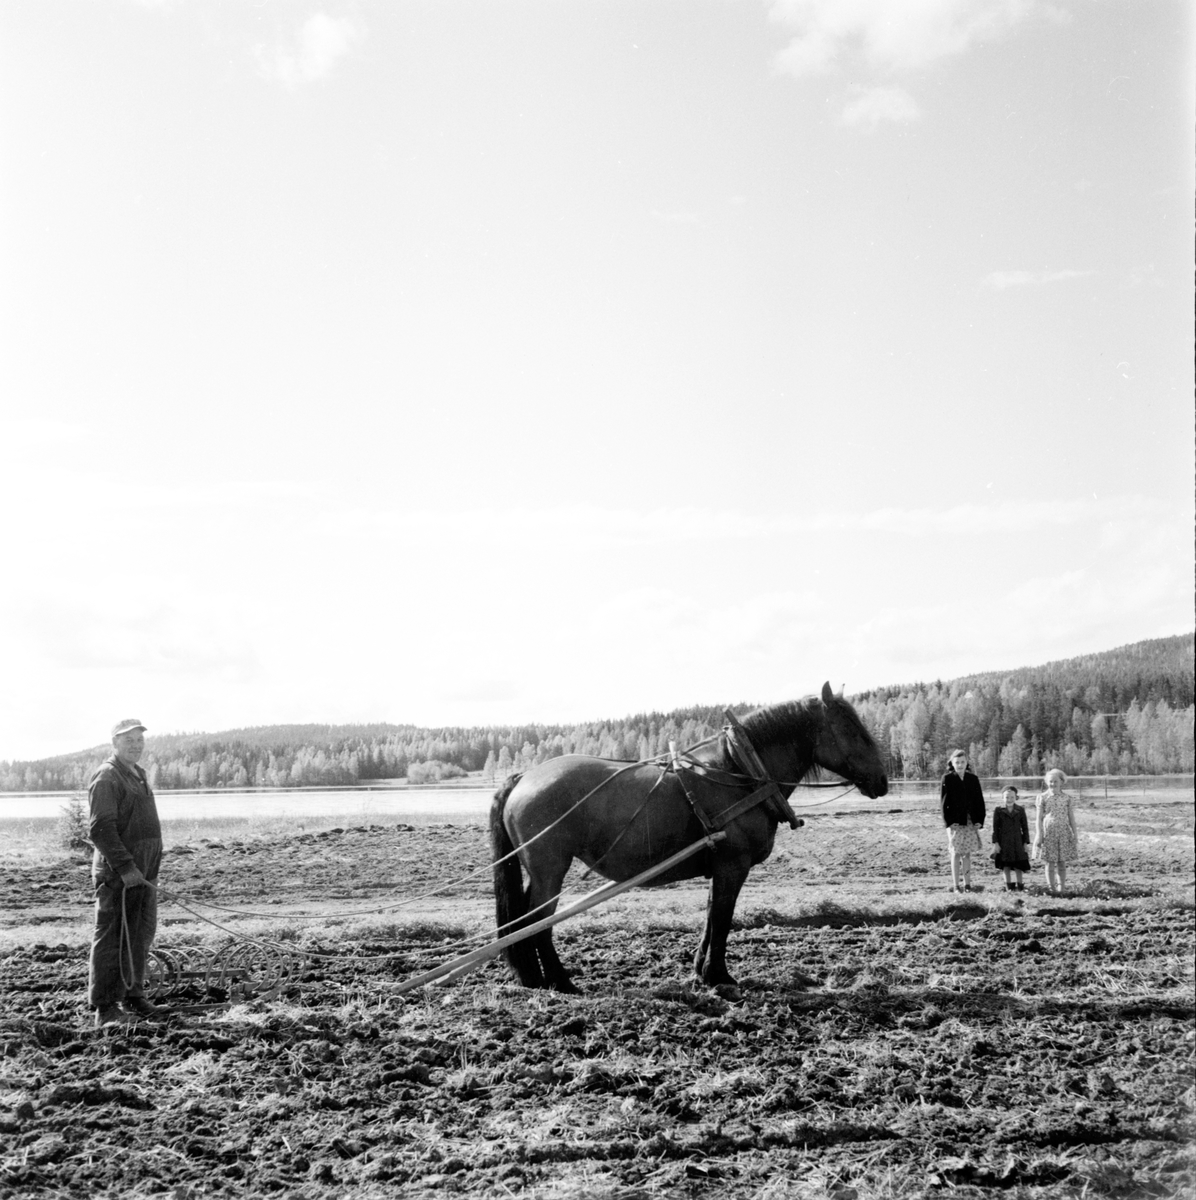 Yxbo, by,
Lantbruksnämnden på besök,
Wård - Sjöberg,
30 Maj 1956